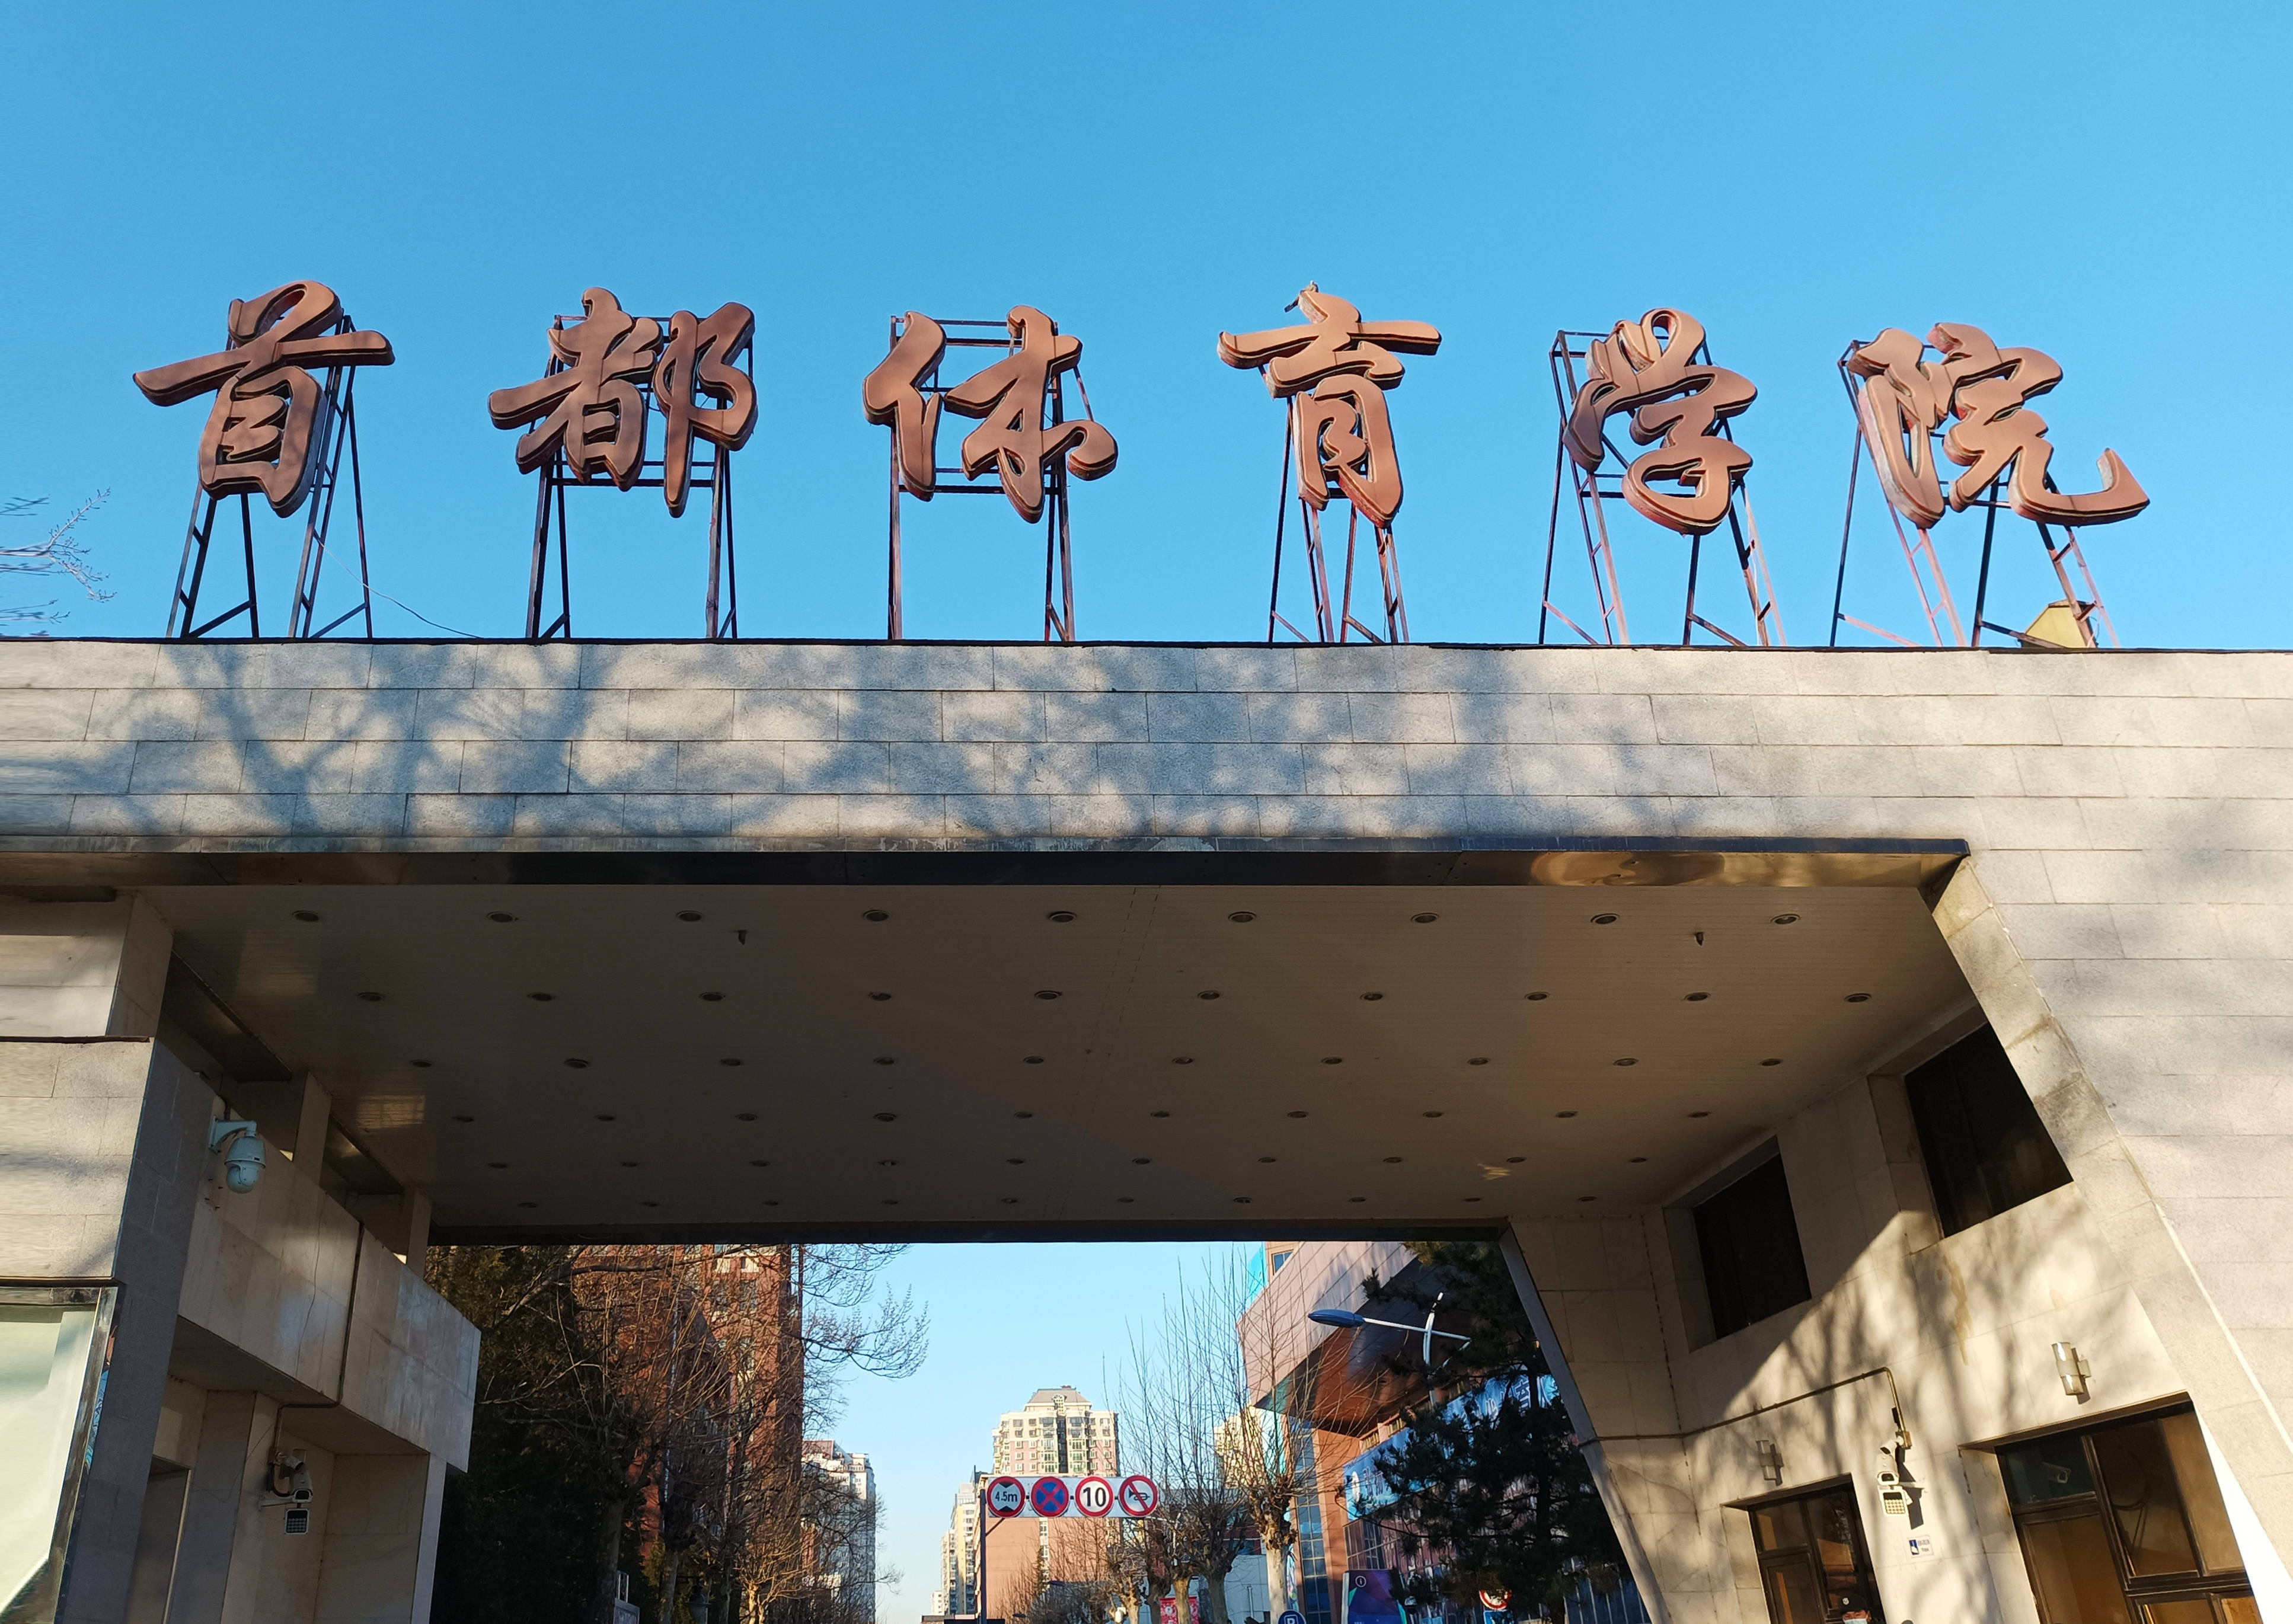 原创鸿泰盛人体成分分析仪进驻北京市首都体育学院